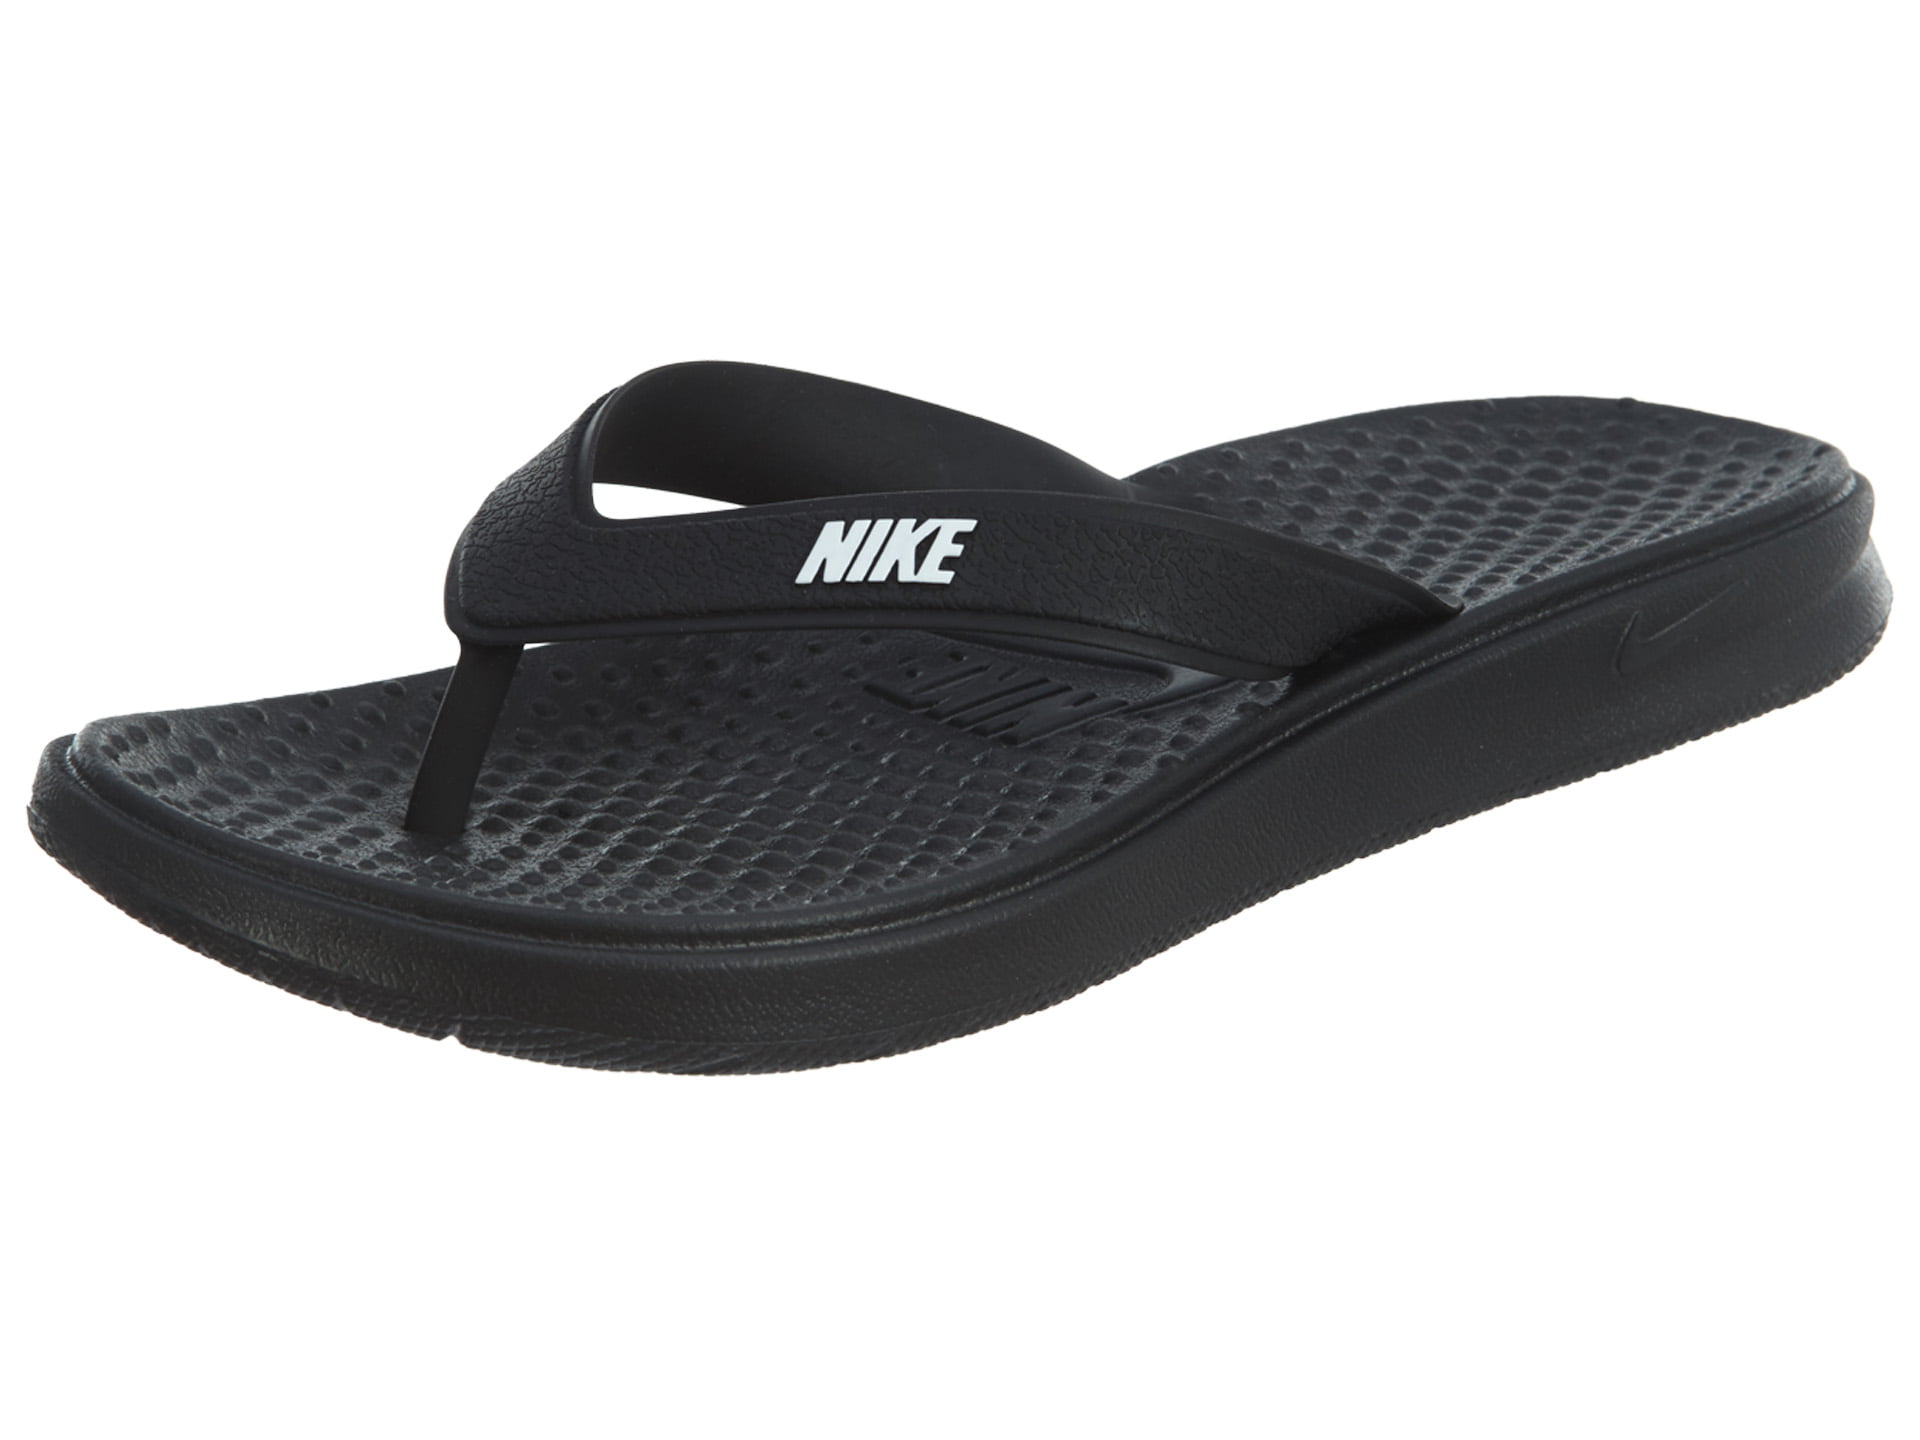 Nike - Nike Solar Thong Womens Style : 882699 - Walmart.com - Walmart.com